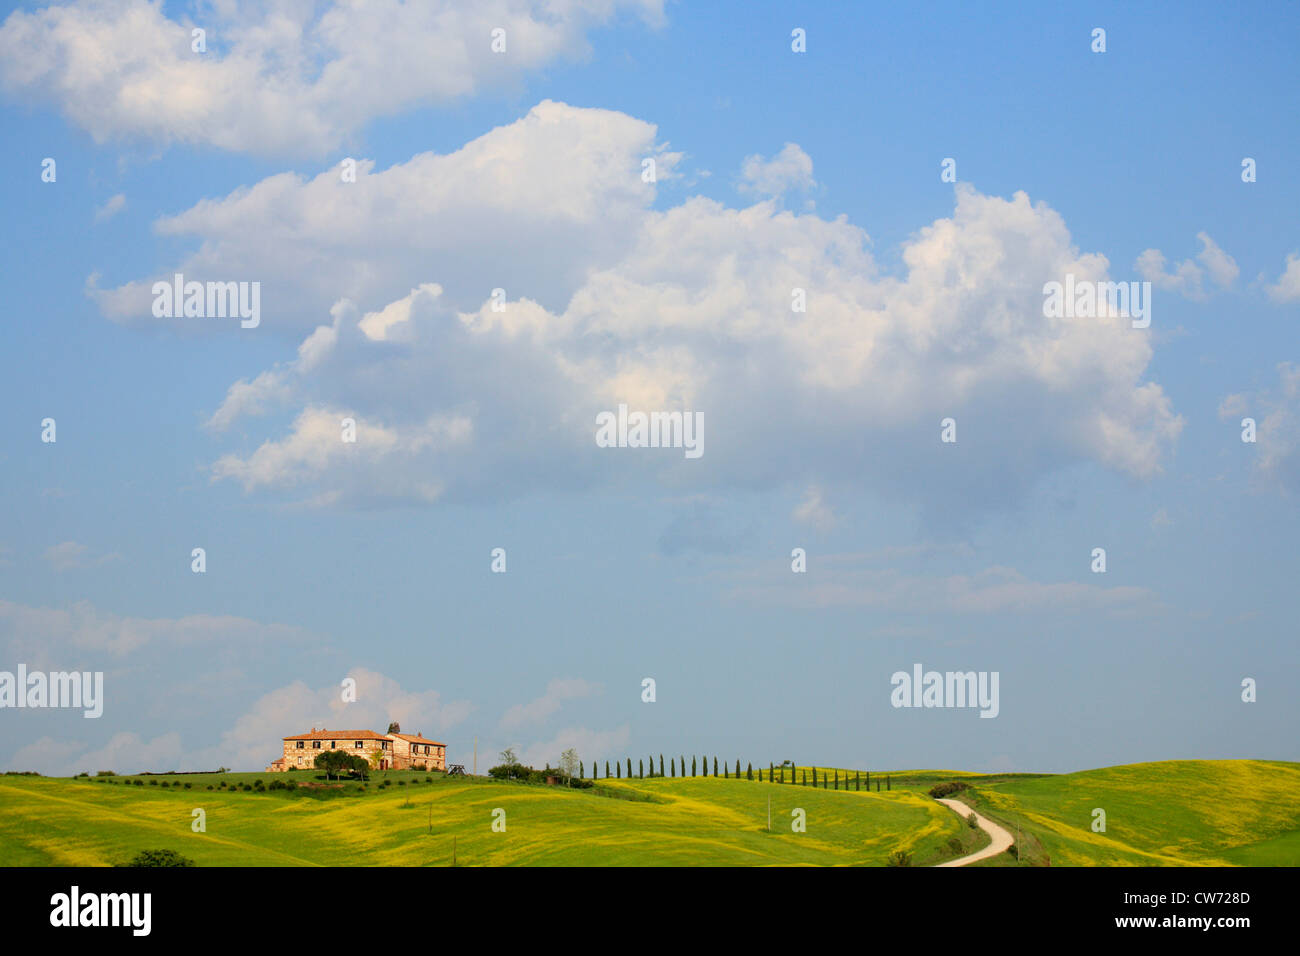 Paesaggio collinare mit cottage tradizionale, Toscana, Italia, Toscana Foto Stock